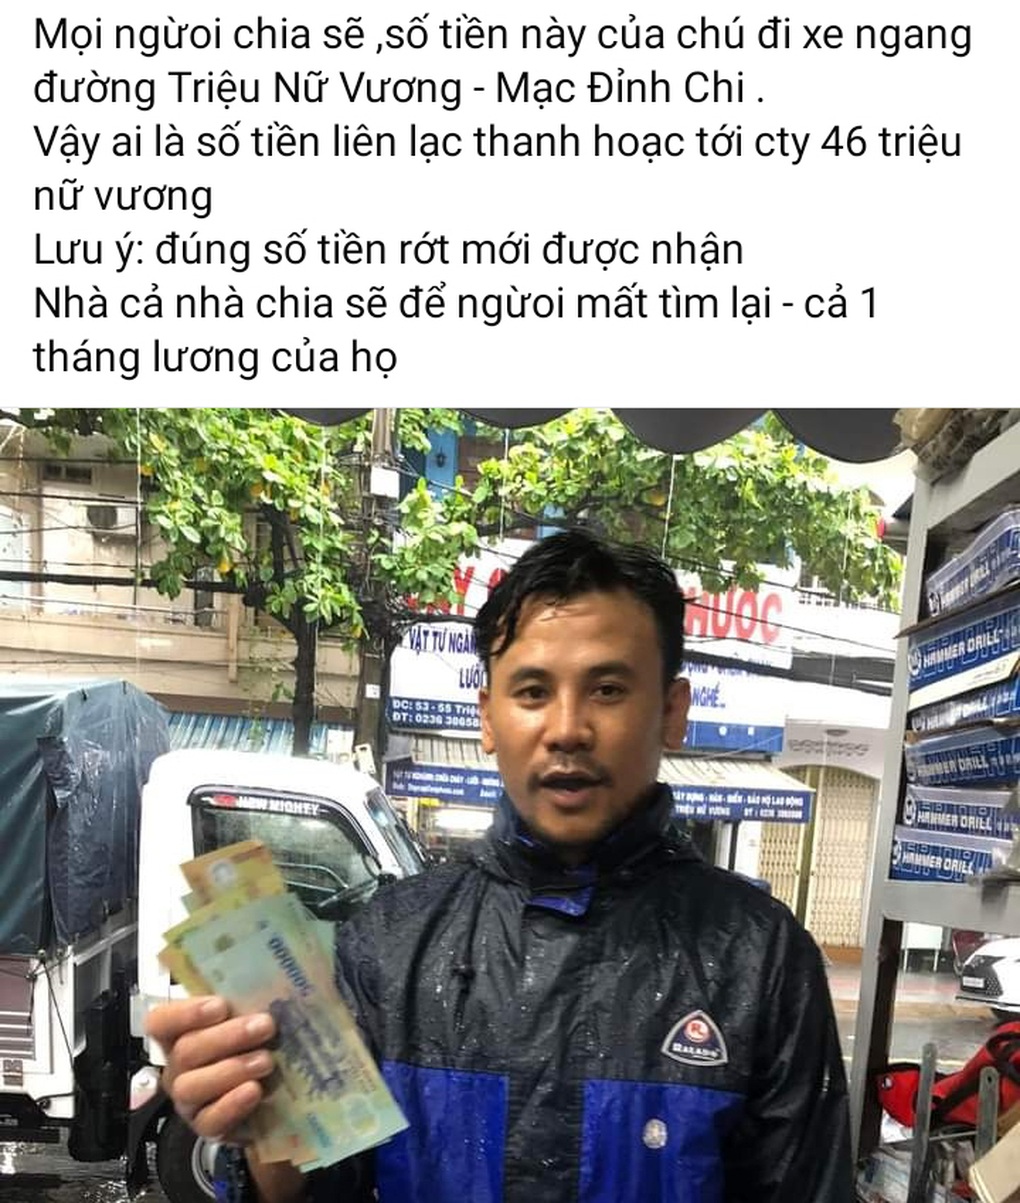 Nhặt được chục triệu đồng trong mưa ngập và tình người Đà Nẵng-2